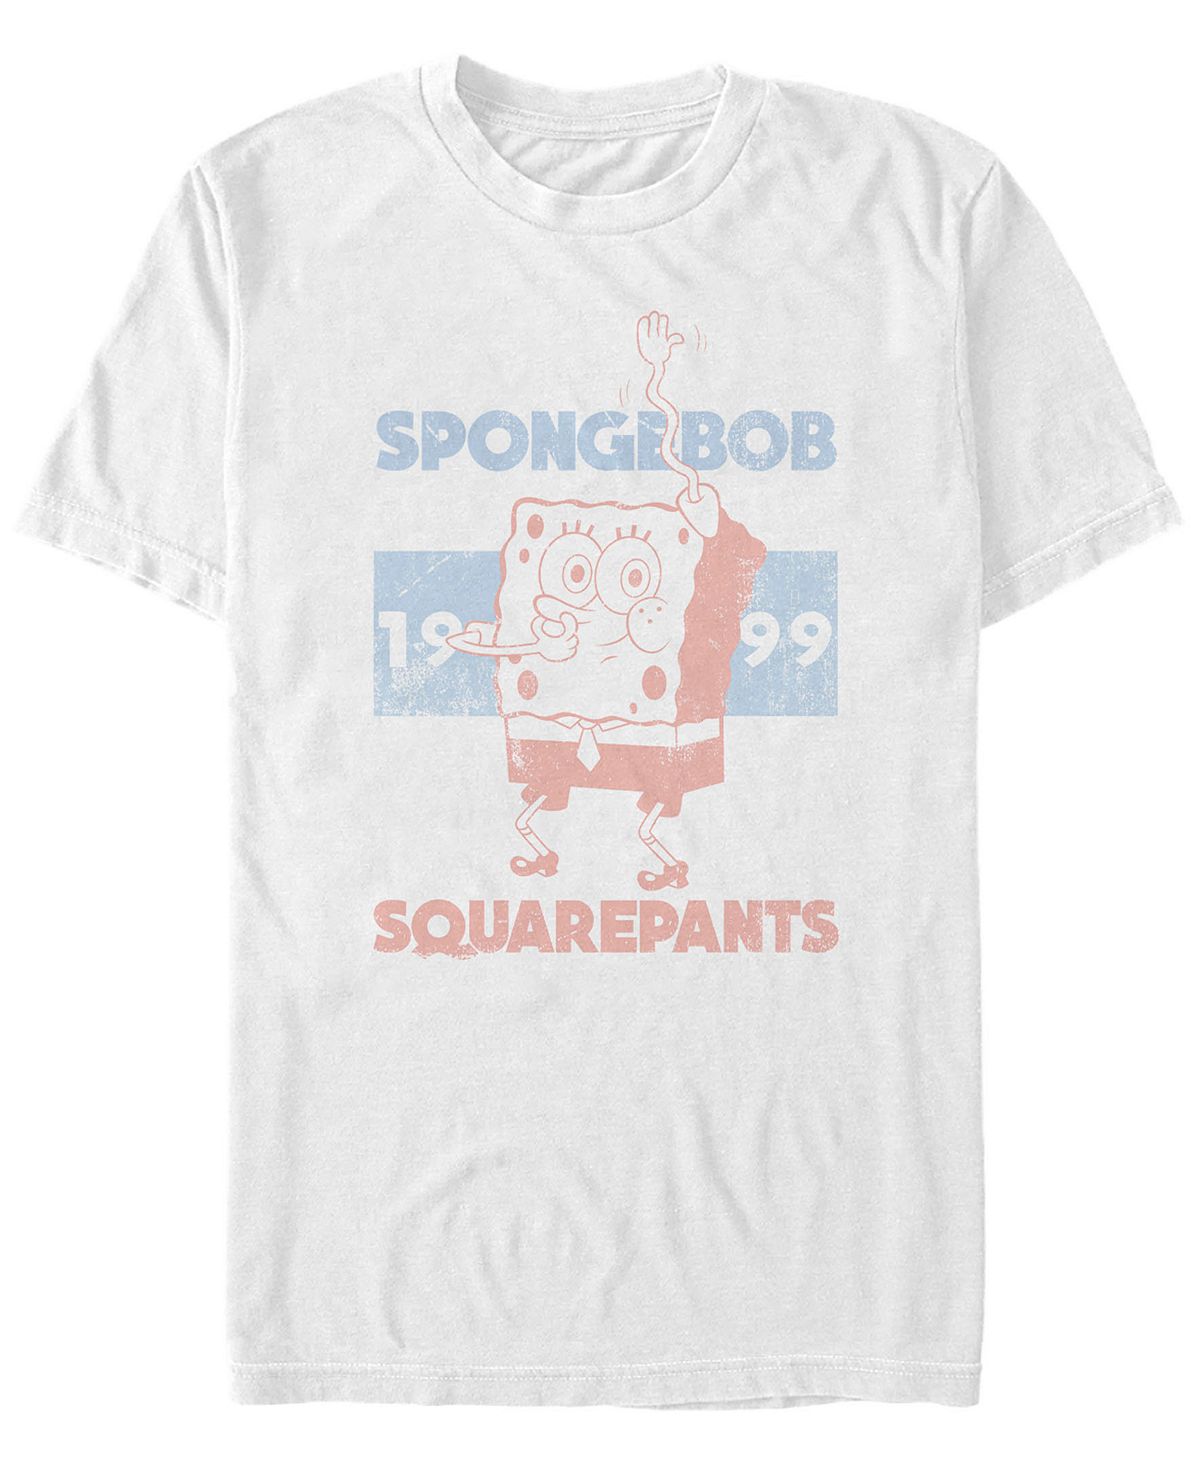 Мужская футболка spongebob 1999 с круглым вырезом и короткими рукавами Fifth Sun, белый игра thq nordic spongebob squarepants the cosmic shake